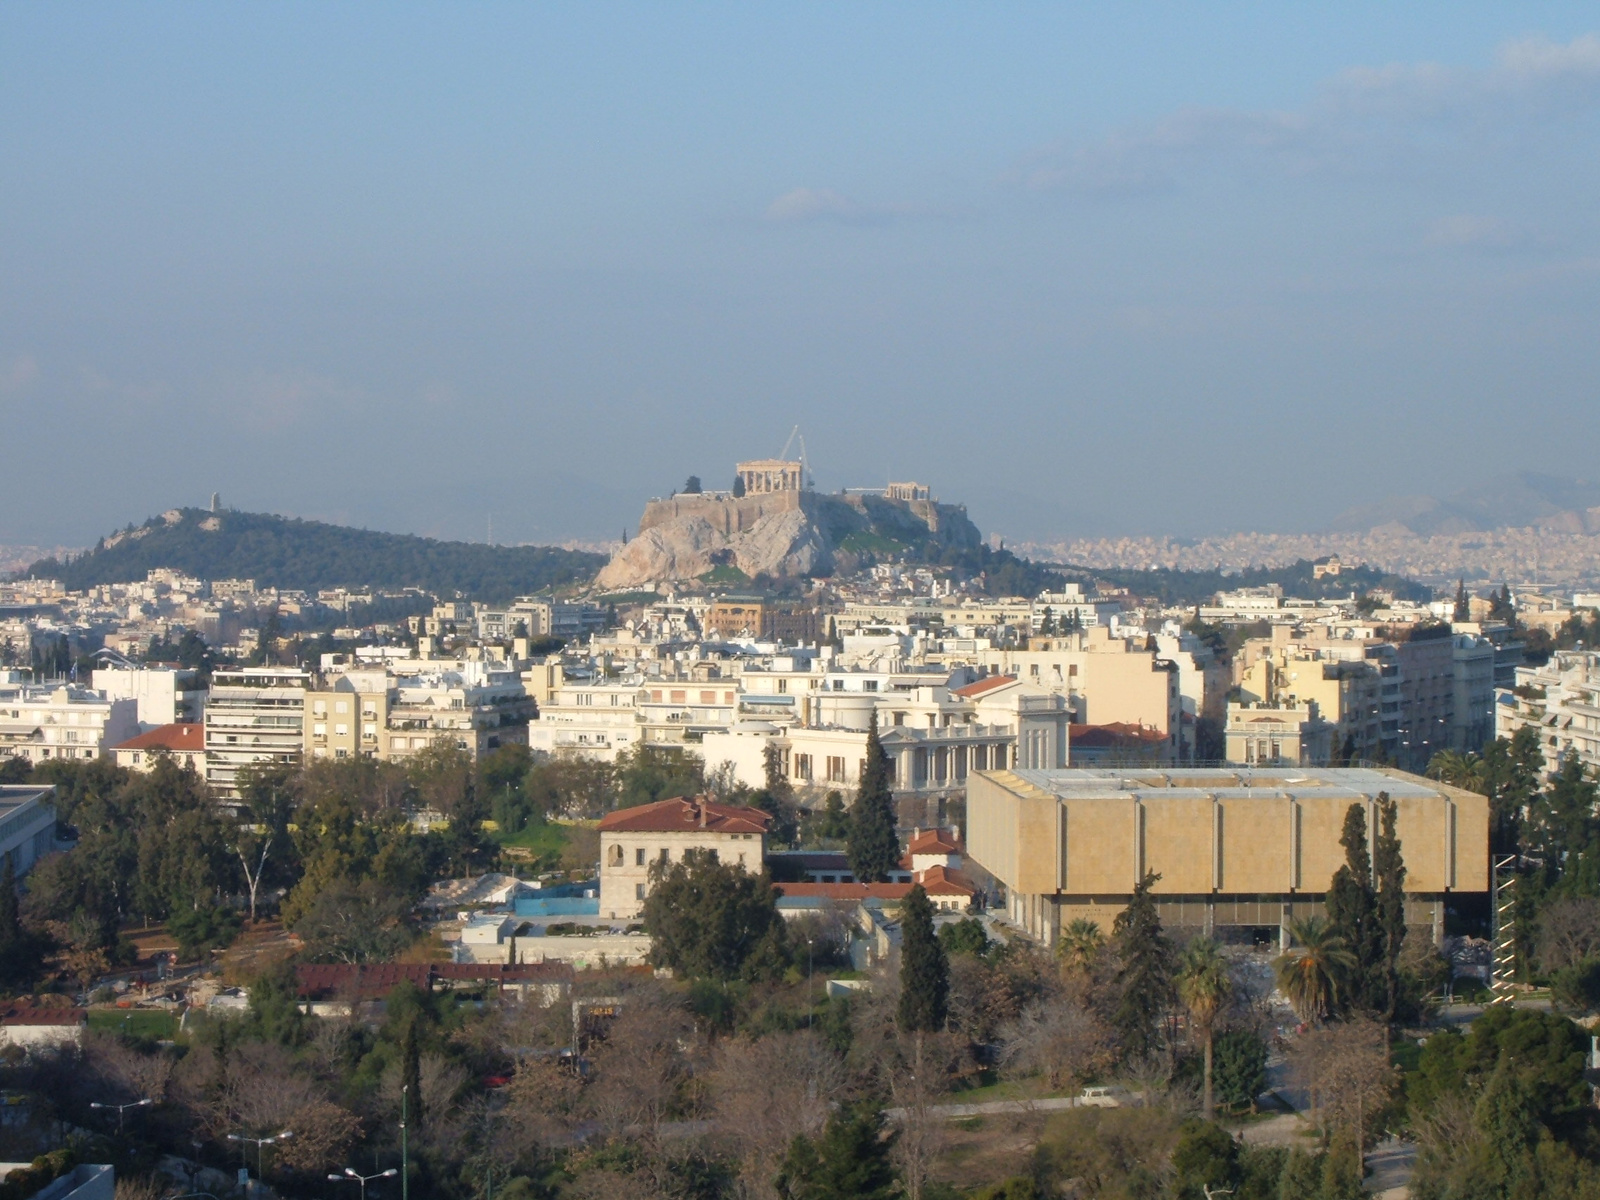 Athina on 16 Feb 2009 8